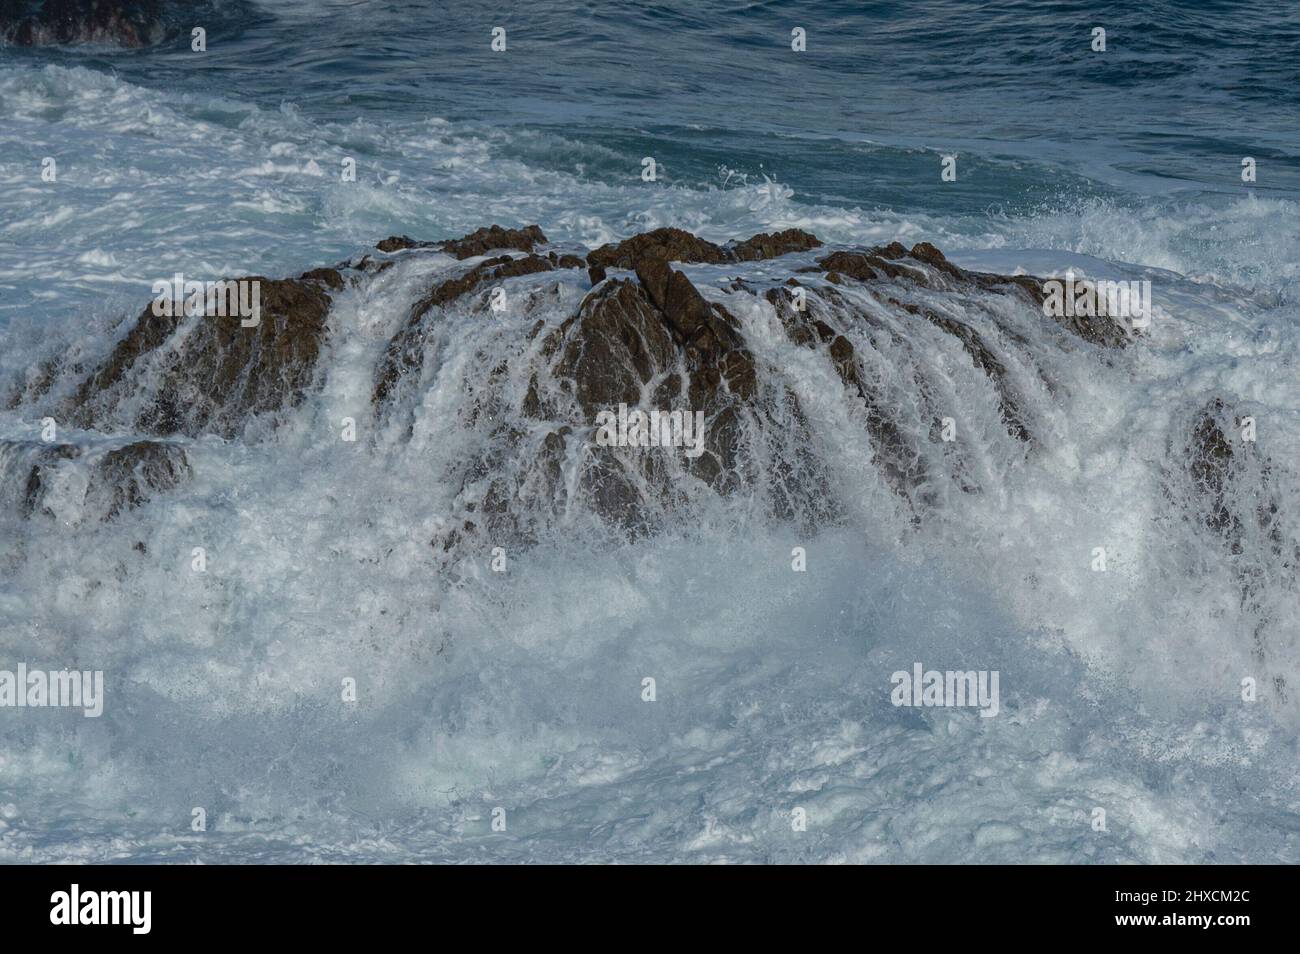 Une roche est inondée par une grande vague, Océan Pacifique, Californie, Etats-Unis Banque D'Images